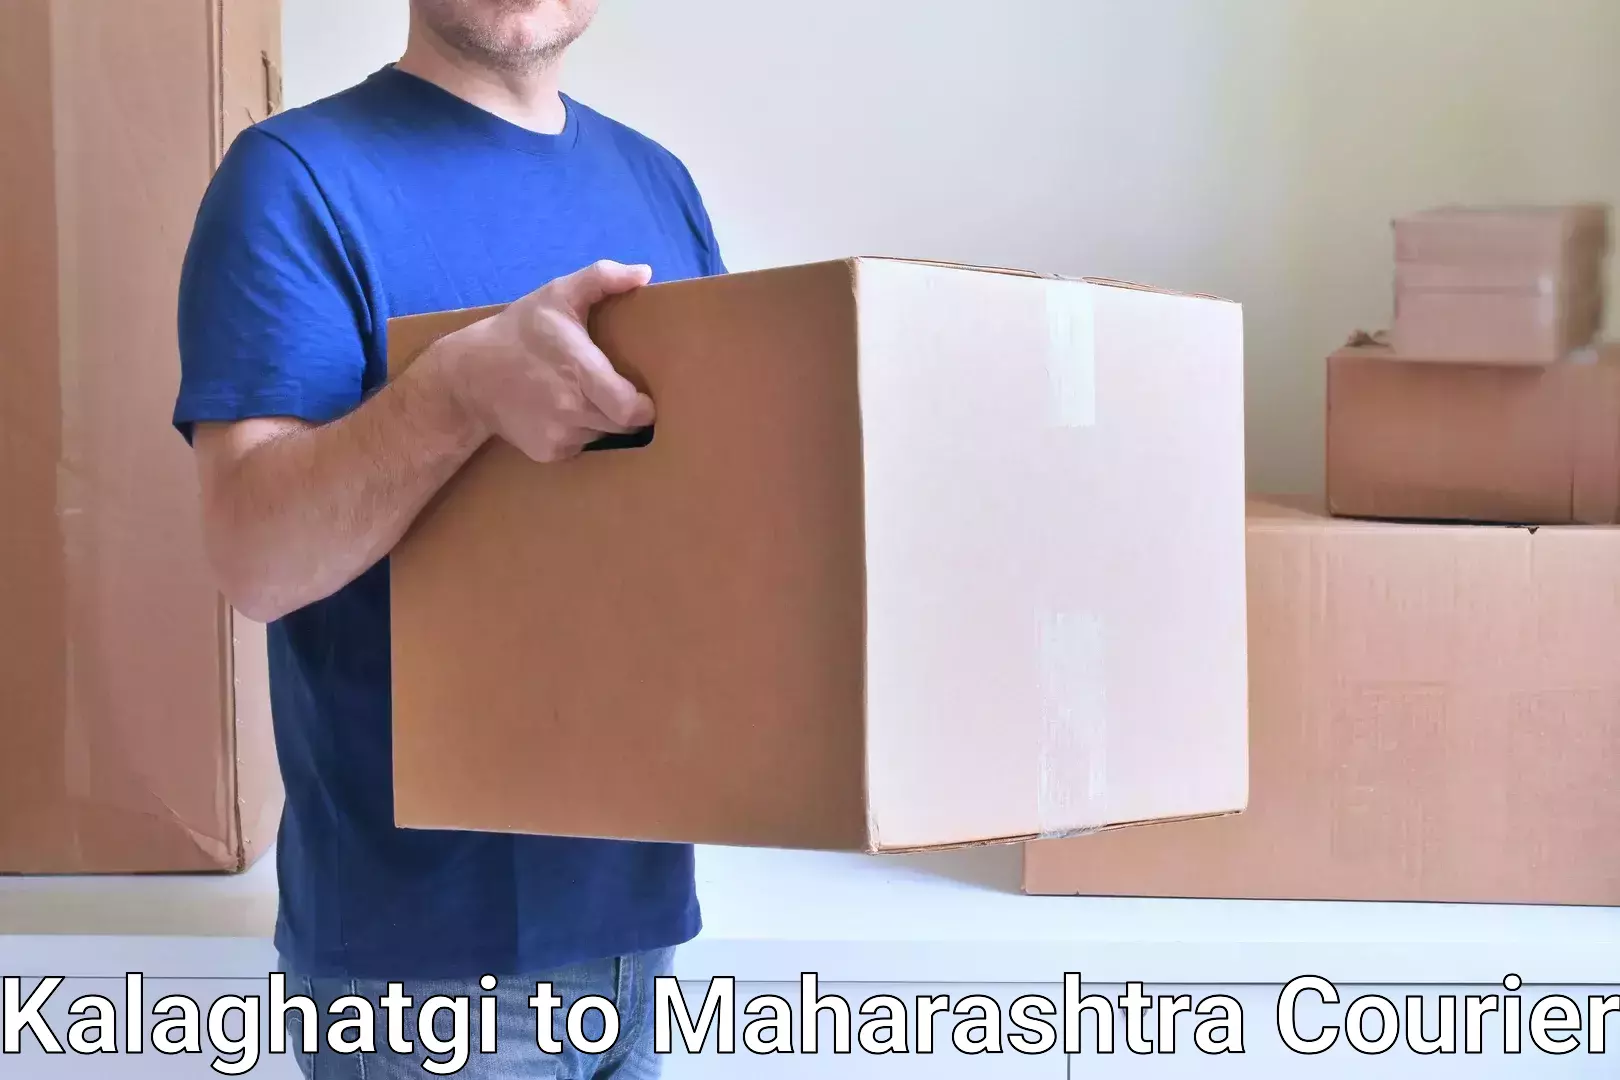 Lightweight parcel options Kalaghatgi to Kalyan Dombivli